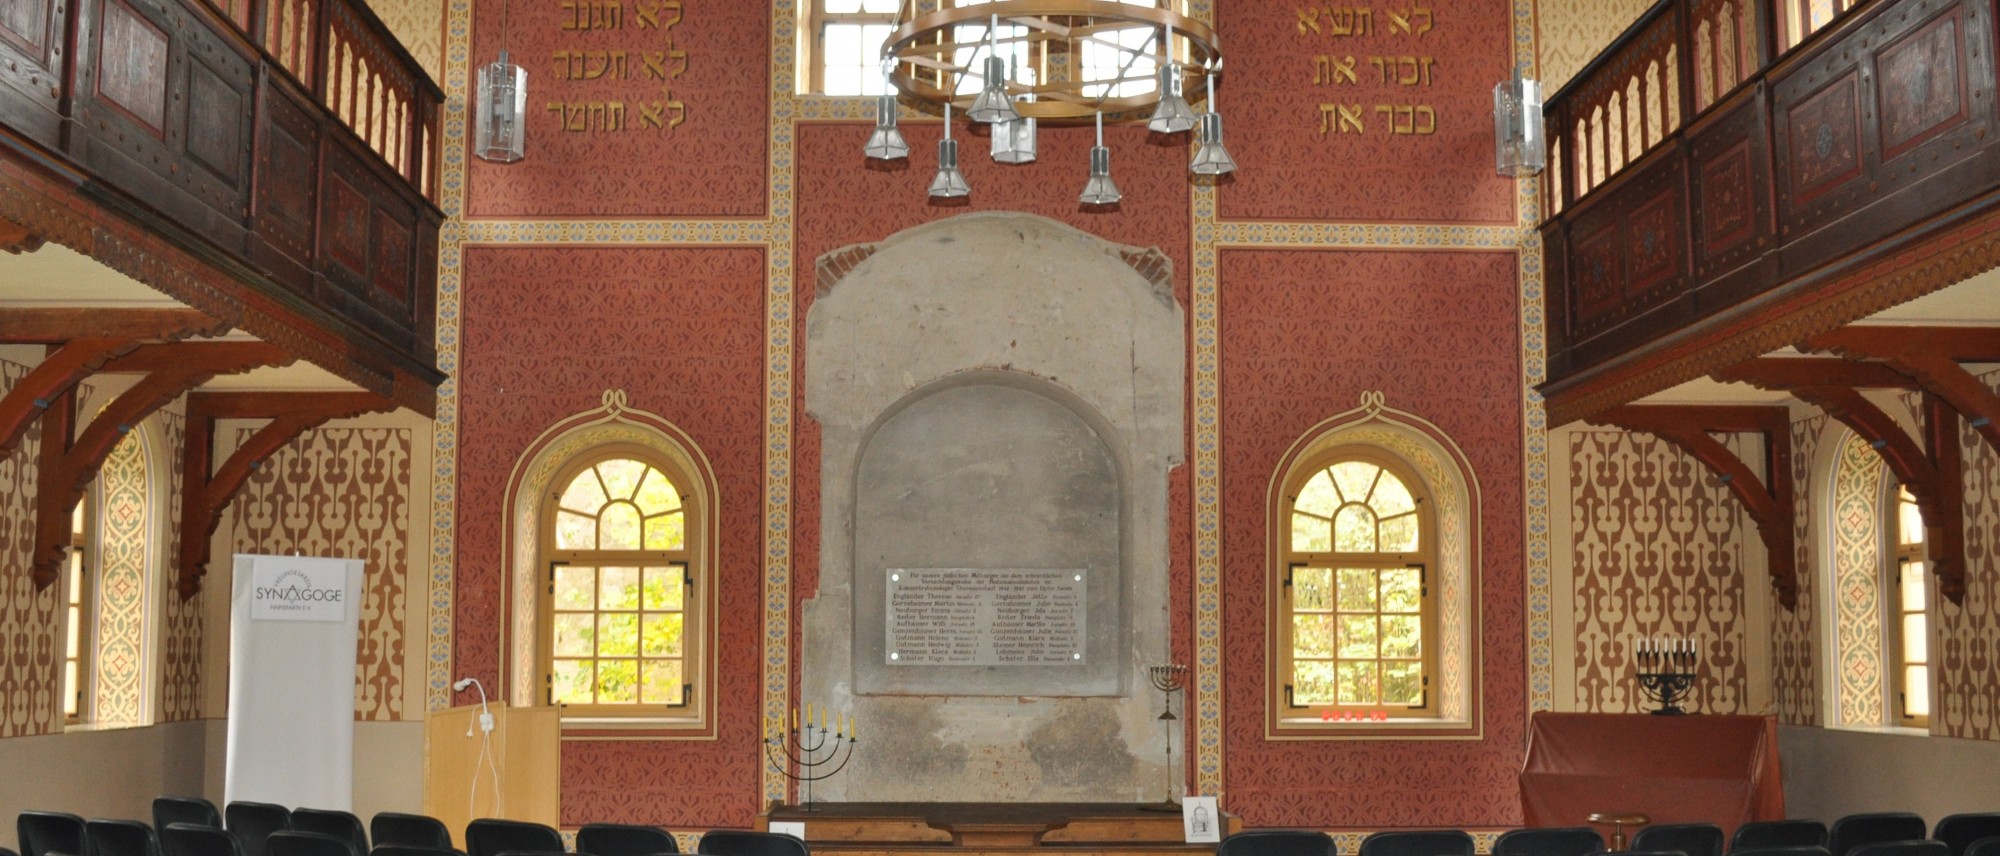 Innenraum der Synagoge Hainsfarth mit Stuhlreihen, Frauenempore und Tora-Schrein. Führt zur Unterseite &quot;Hainsfarth&quot;.